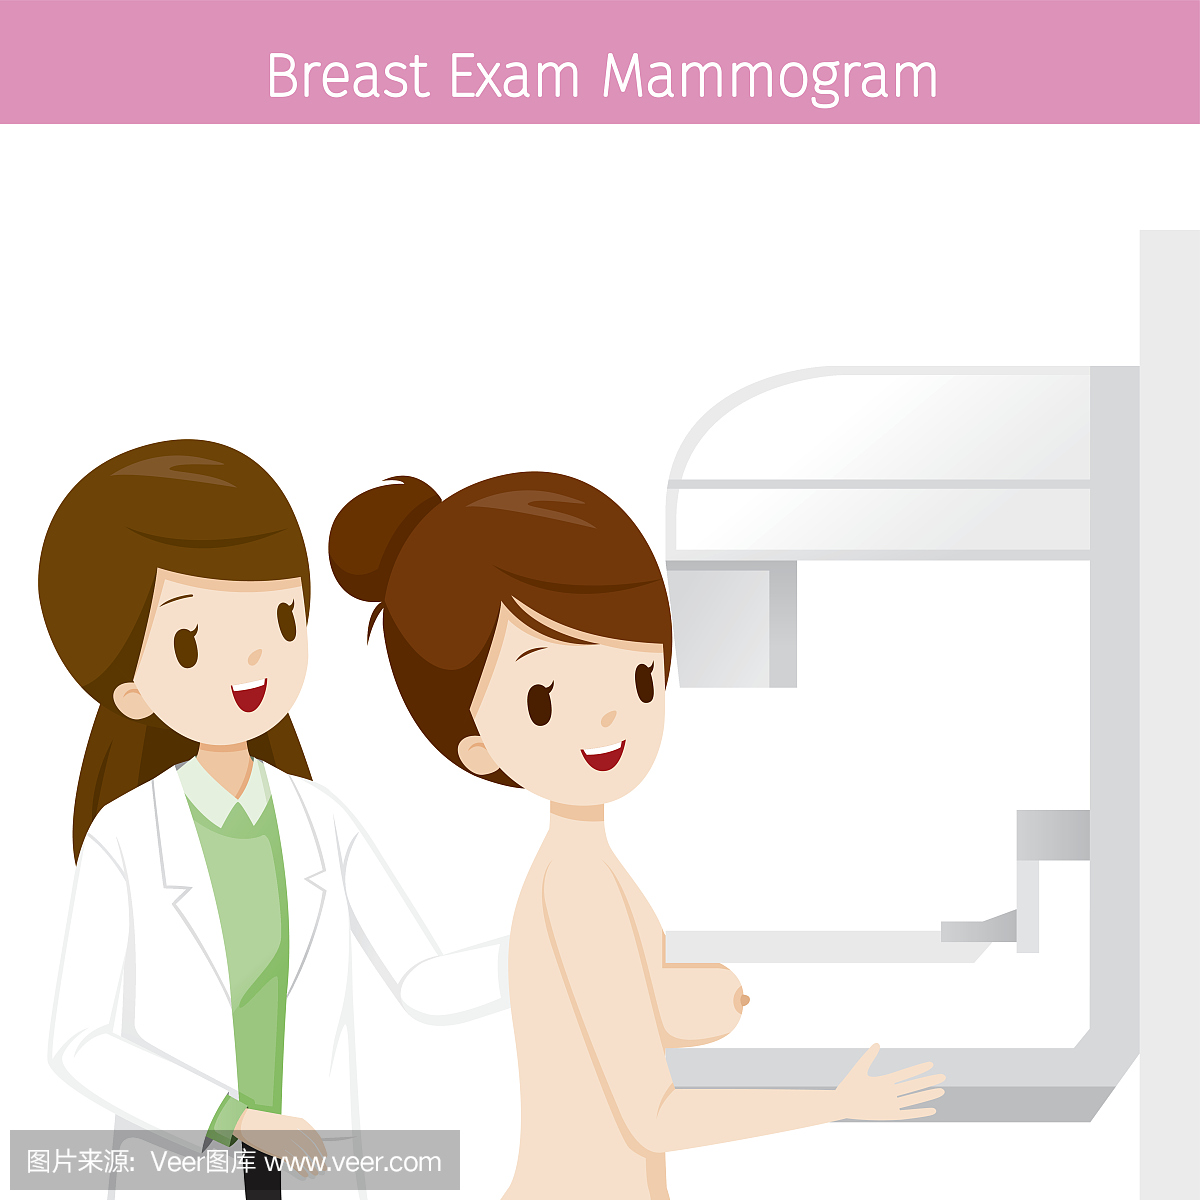 女医生检查女子患者乳房乳房X线照片